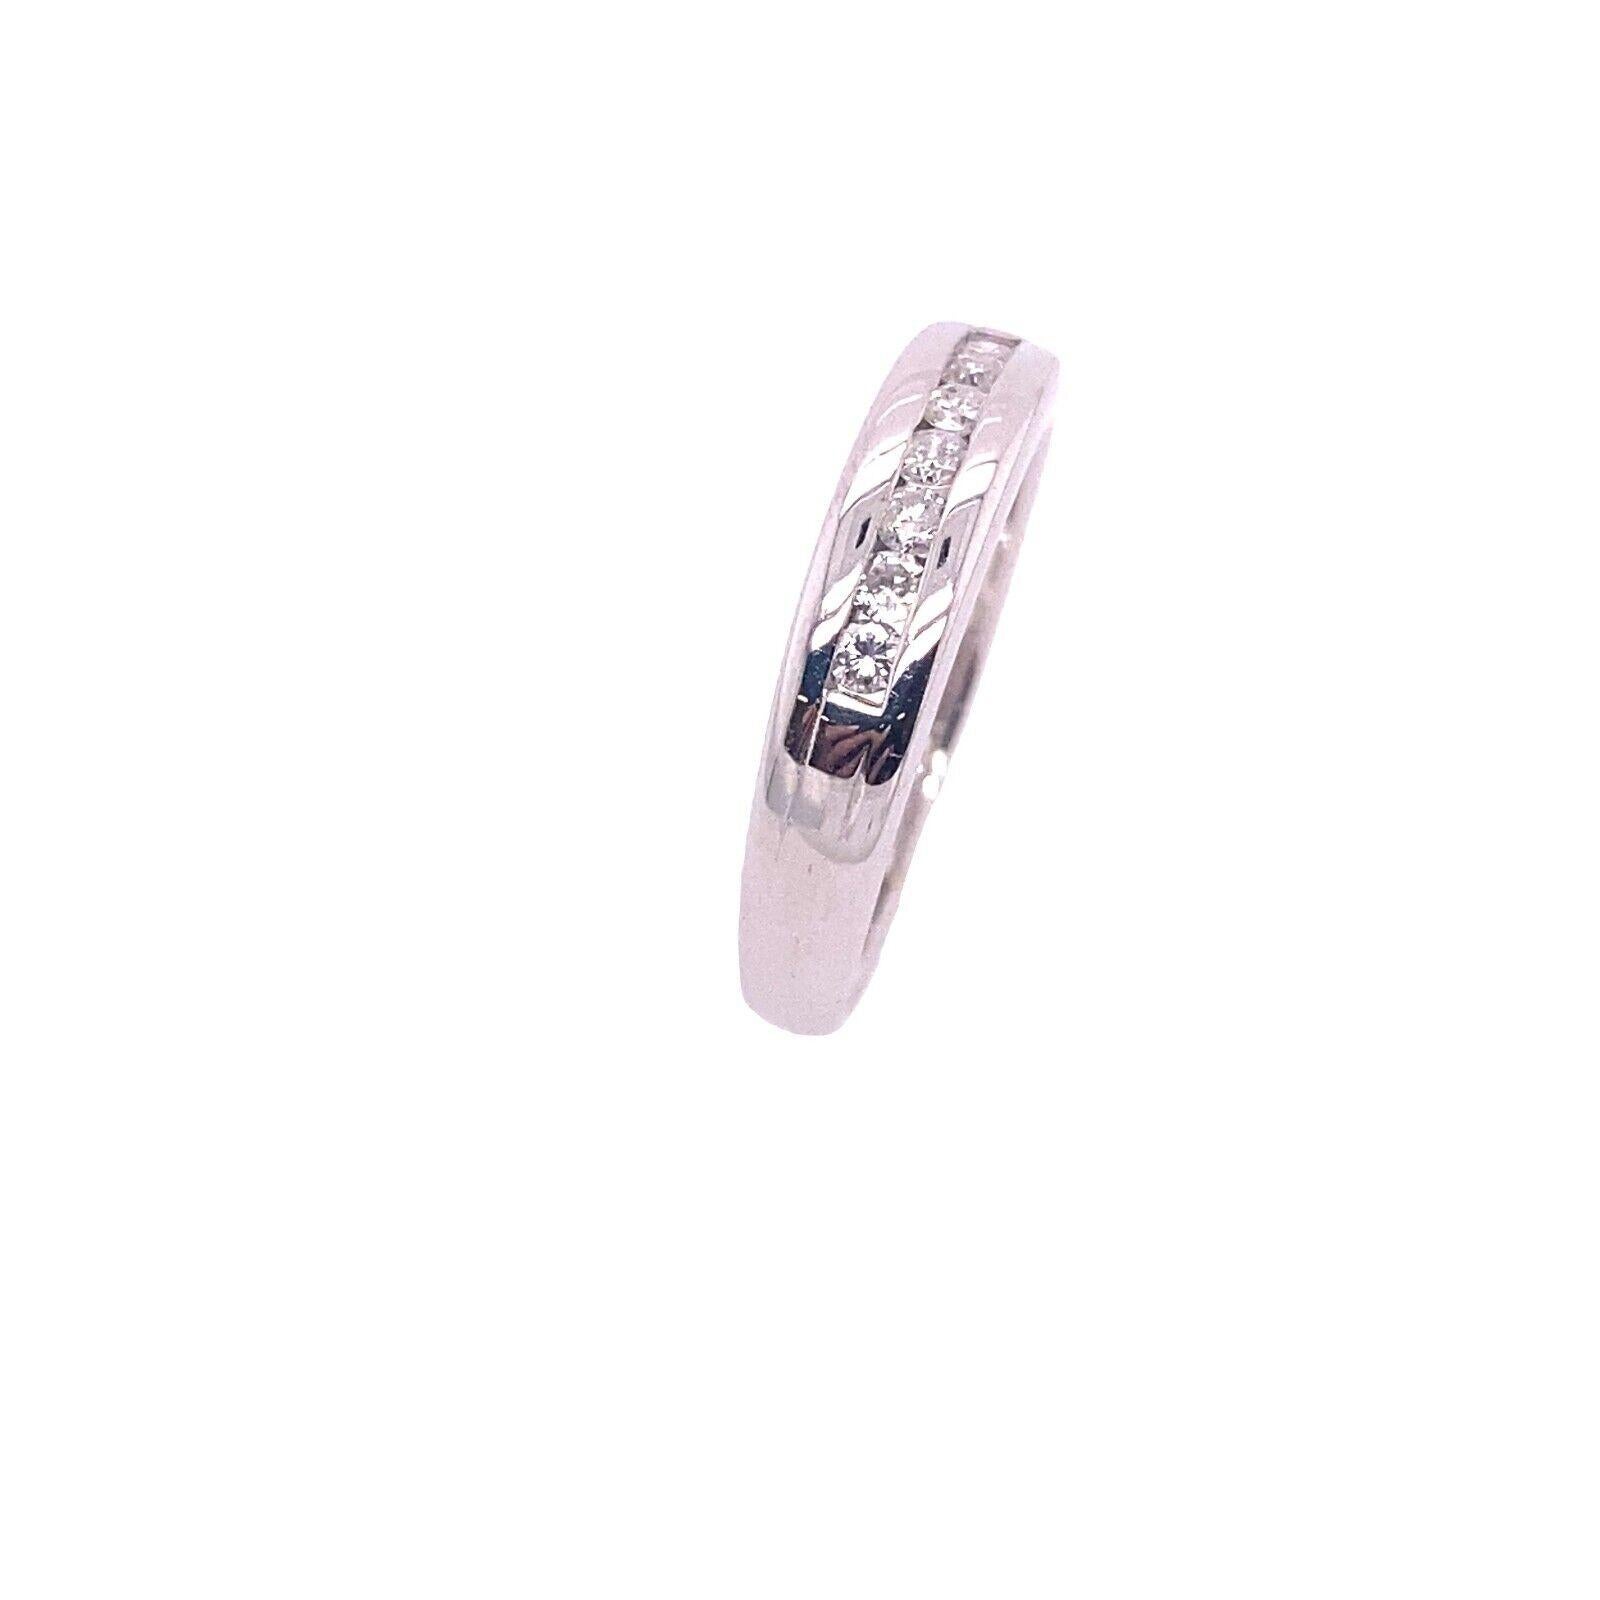 Diamant-Eternity/Wedding-Ring aus 18 Karat Weißgold mit 0,20 Karat Diamanten

Dieser Ehering ist wunderschön und kann auch als Ewigkeitsring getragen werden. Er zeichnet sich durch eine Reihe von 0,20 Karat Diamanten aus, die in einen Schaft aus 18